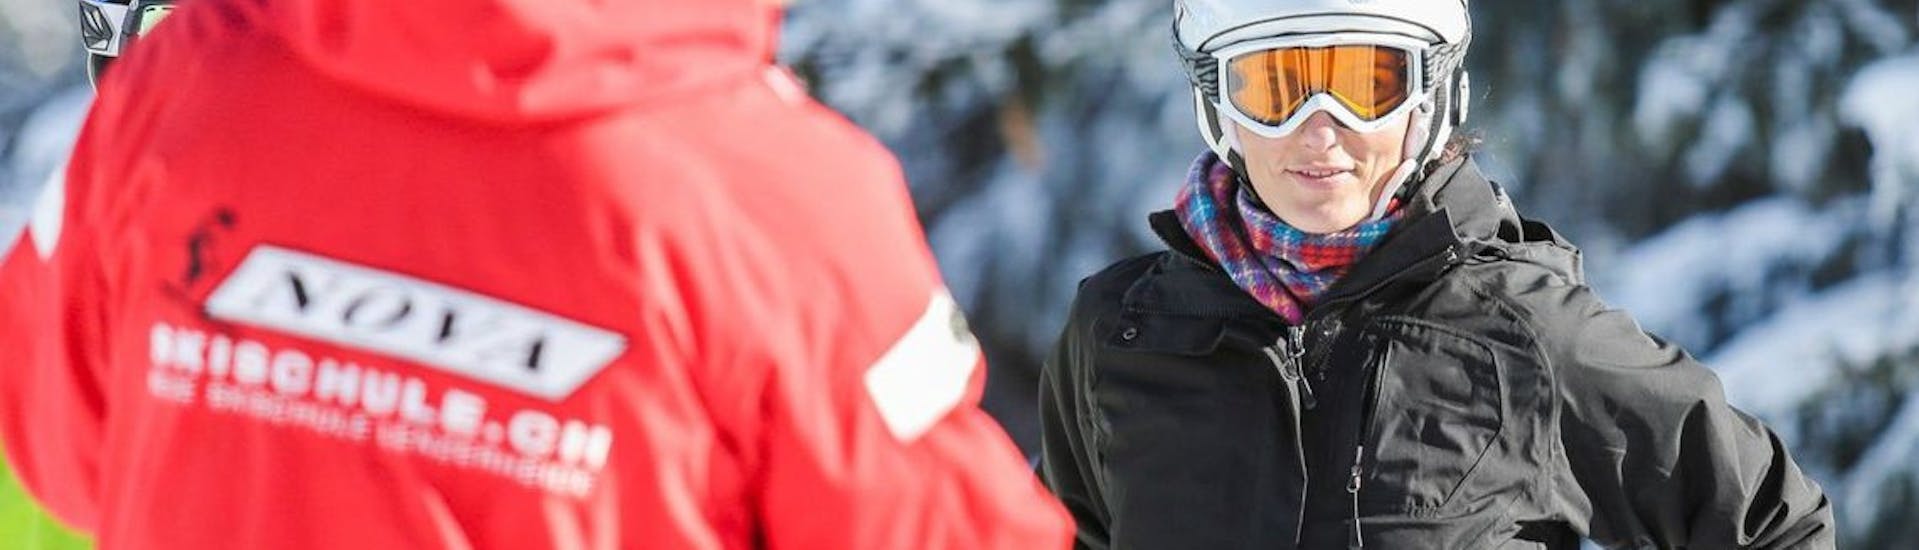 Skileraar die instructies geeft aan leerlingen tijdens de privé skilessen voor volwassenen bij skischool Nova.